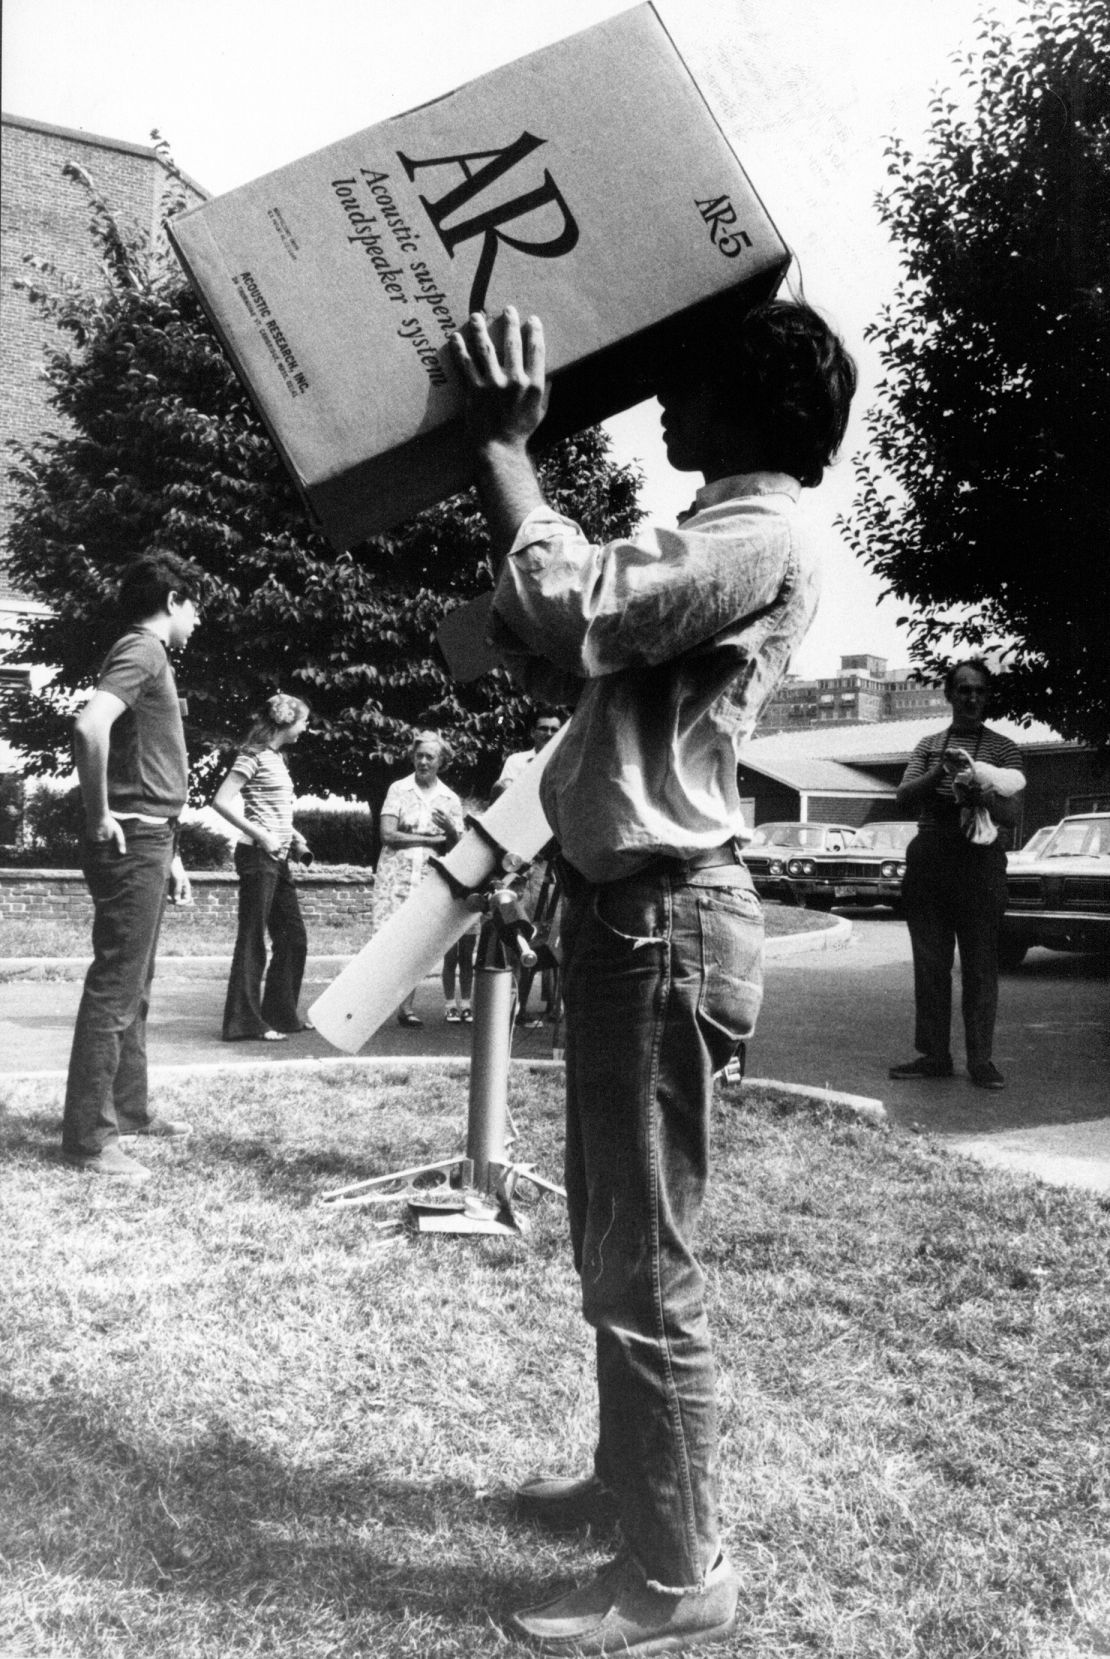 A man views the 1972 total solar eclipse through a cardboard box.